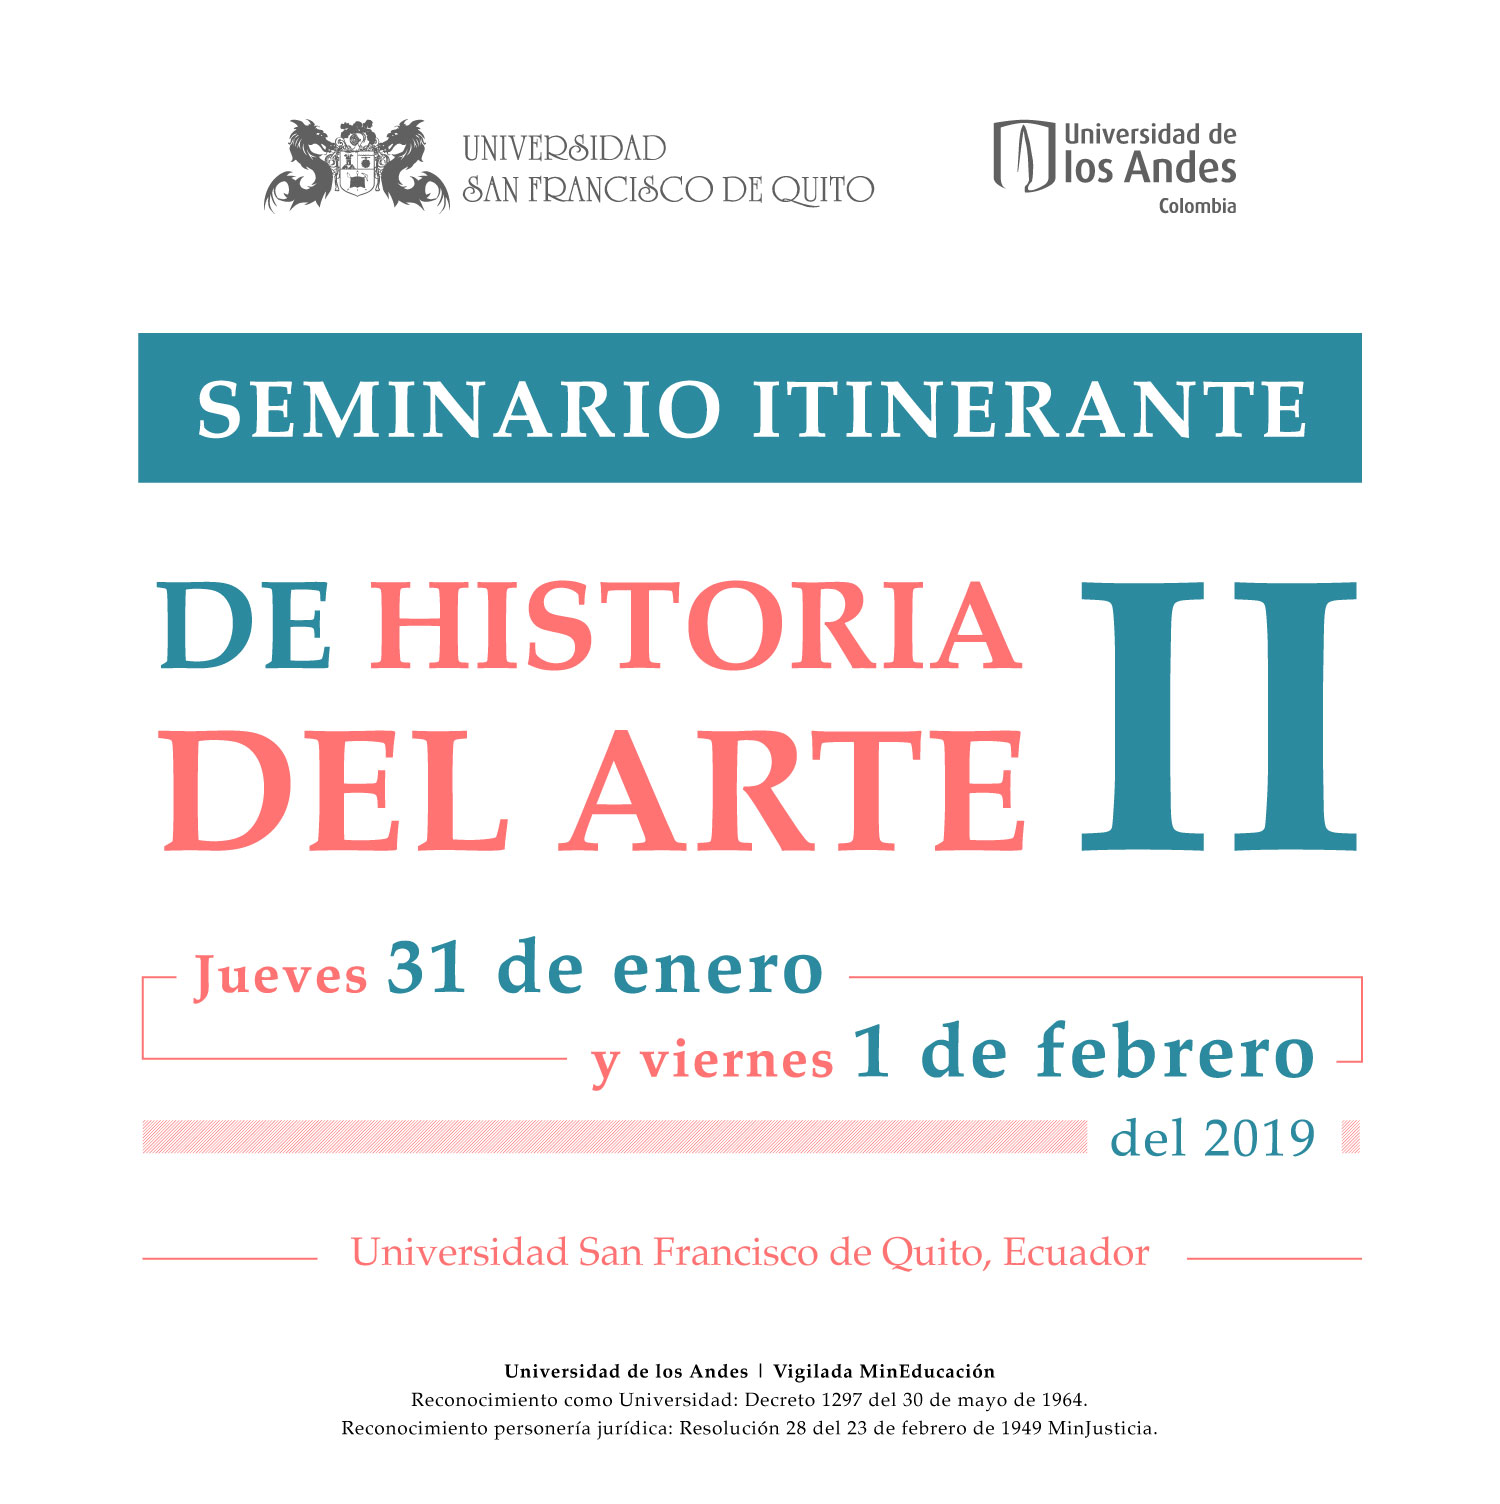 Asista al Seminario itinerante de historia del Arte II en la USFQ (Universidad San Francisco de Quito, Ecuador) dónde partician profesores de Uniandes.